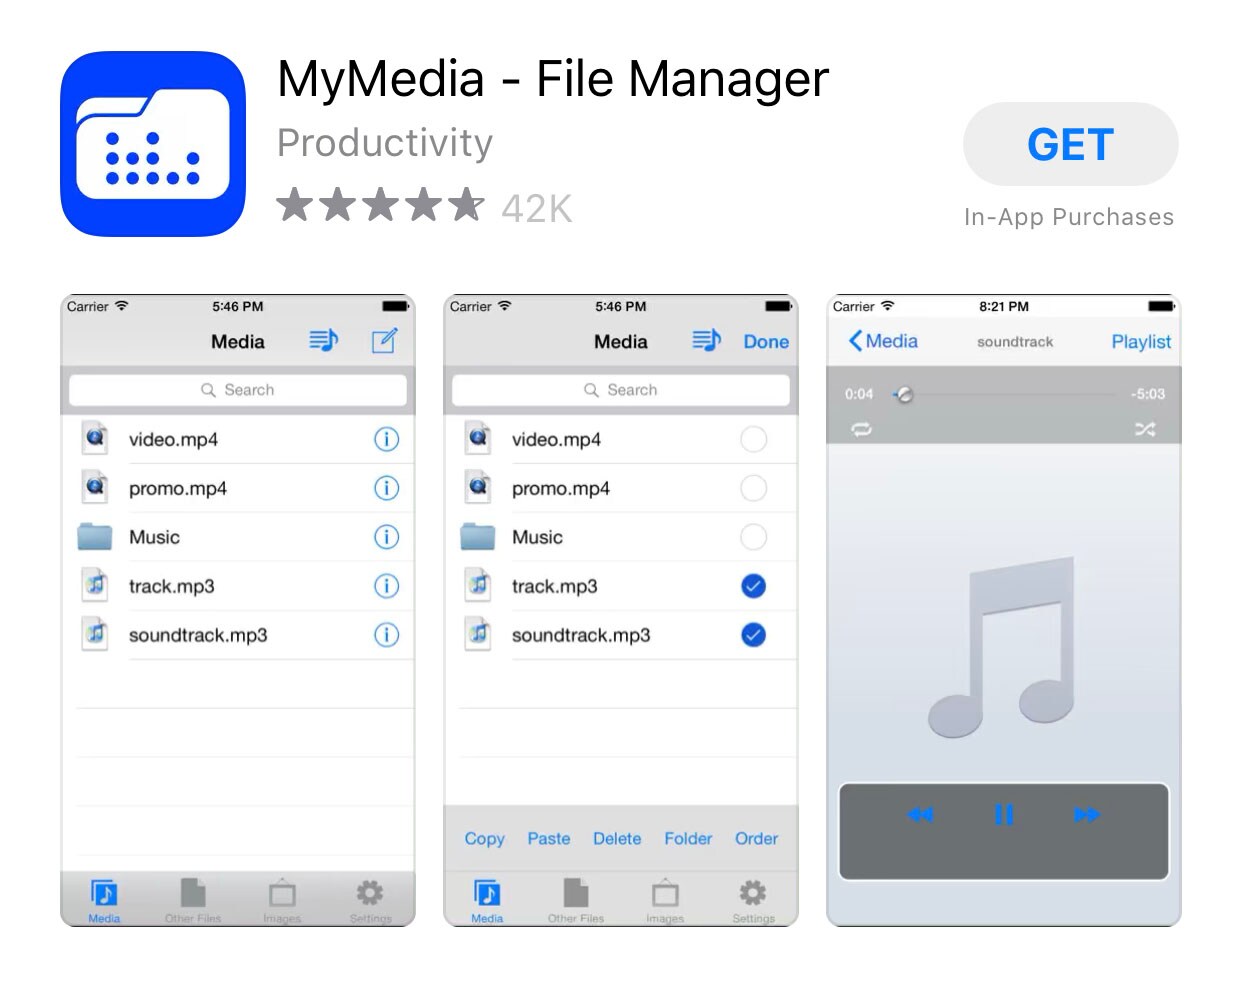 Installieren Sie den mymedia-Dateimanager